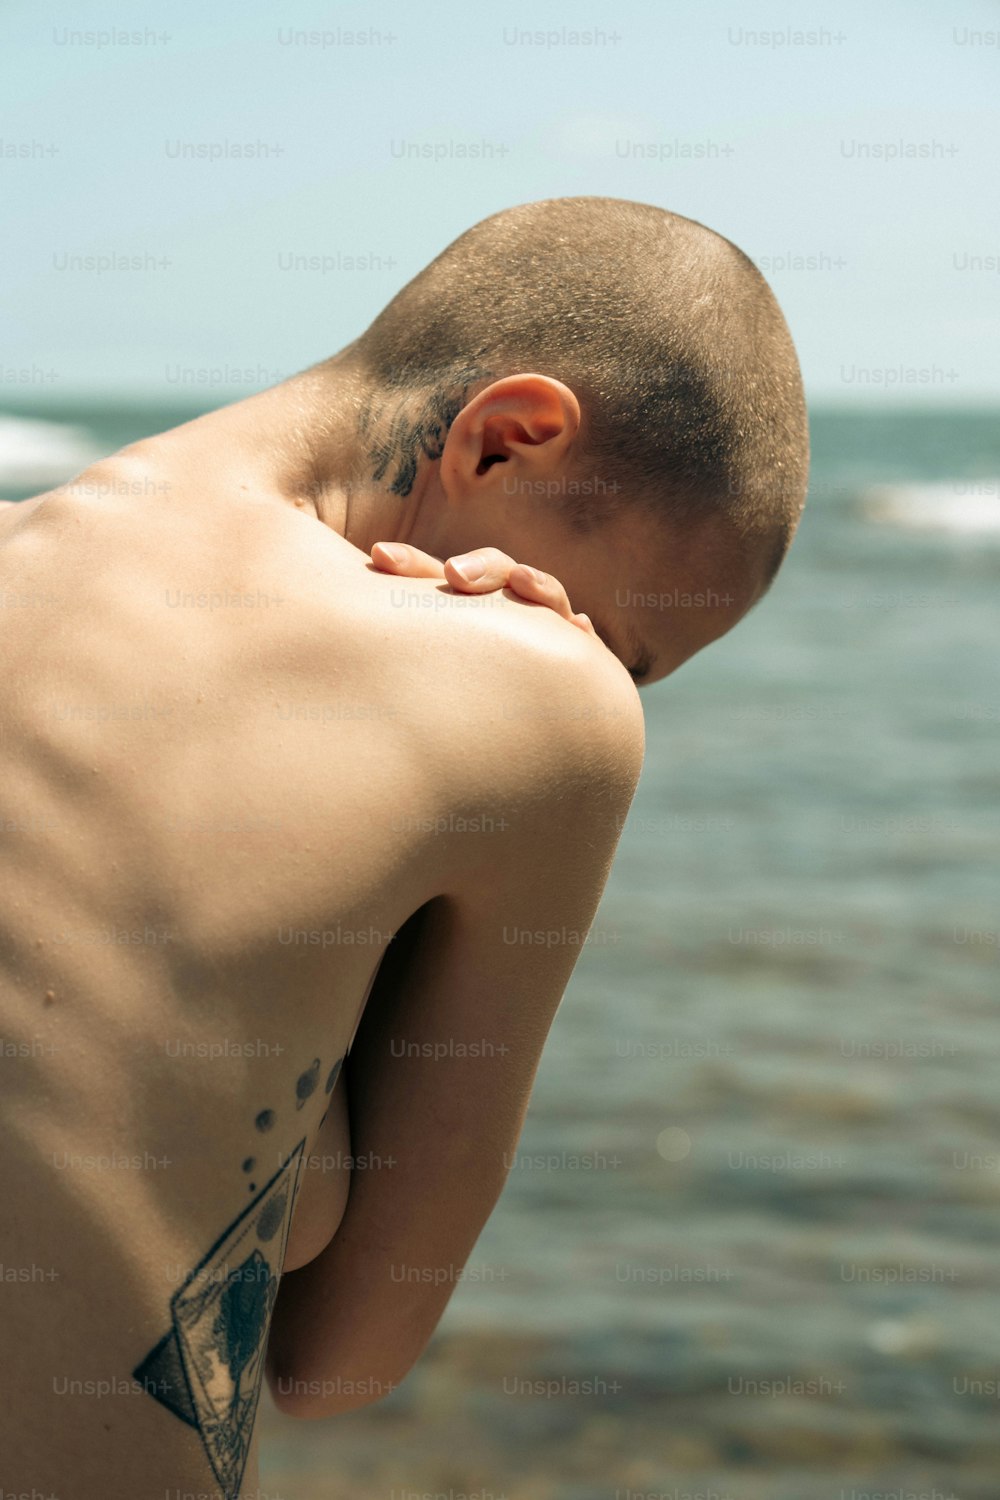 Un uomo con un tatuaggio triangolare sulla schiena